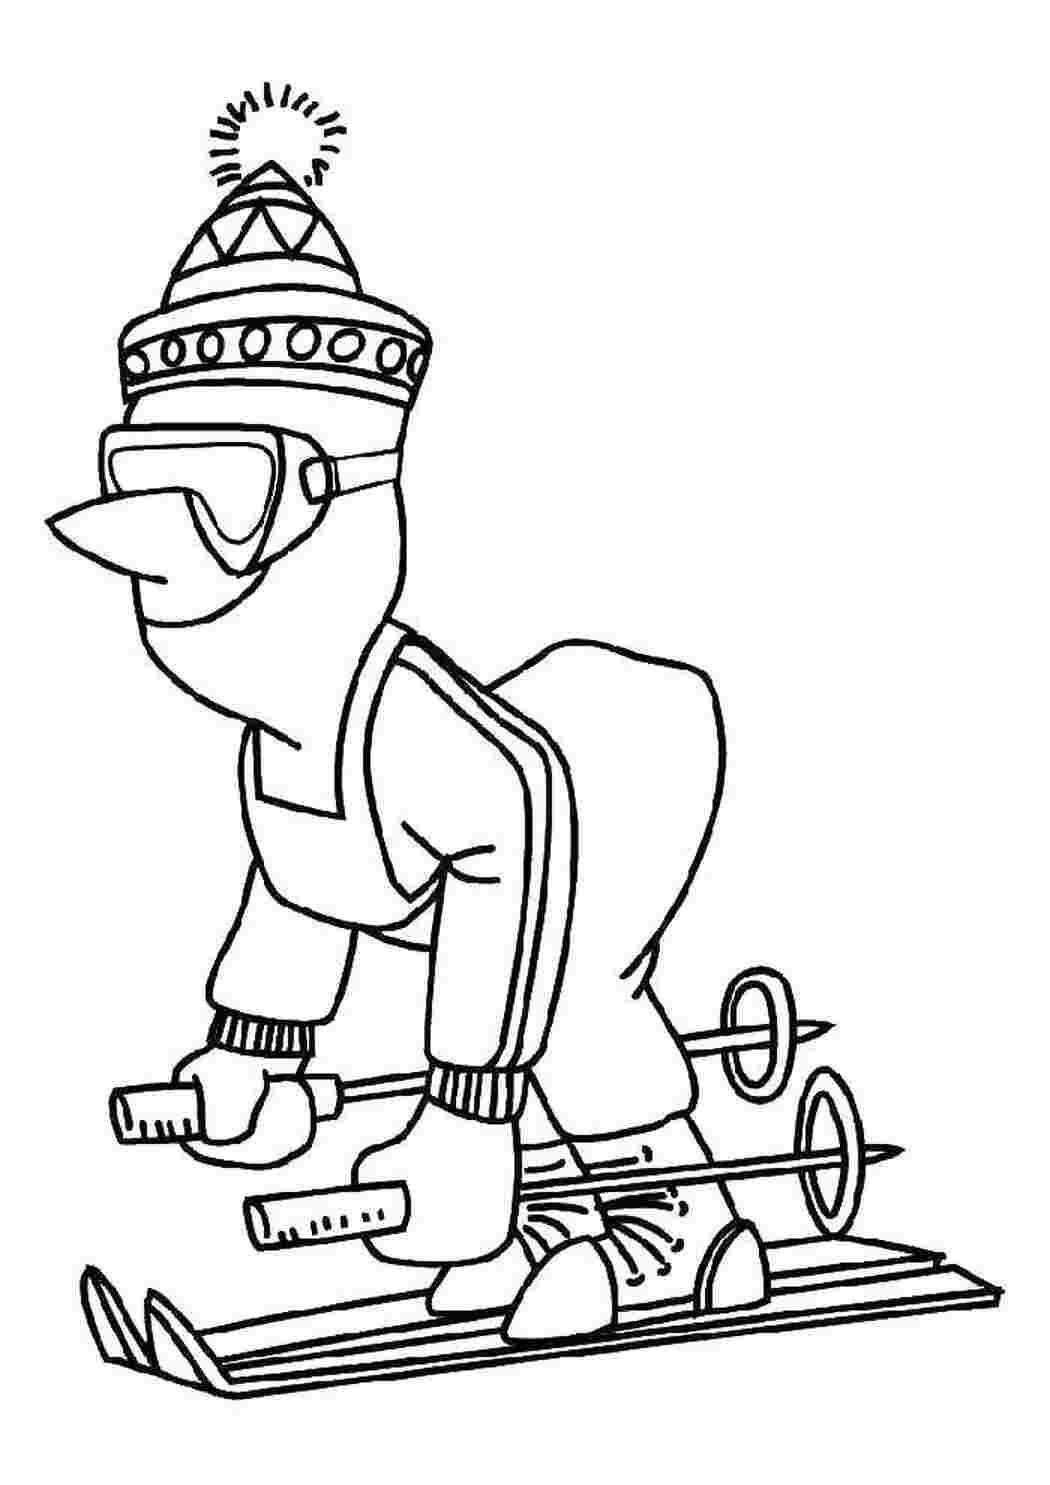 Раскраски Человек на лыжах лыжи человек, лыжи, шапка, очки